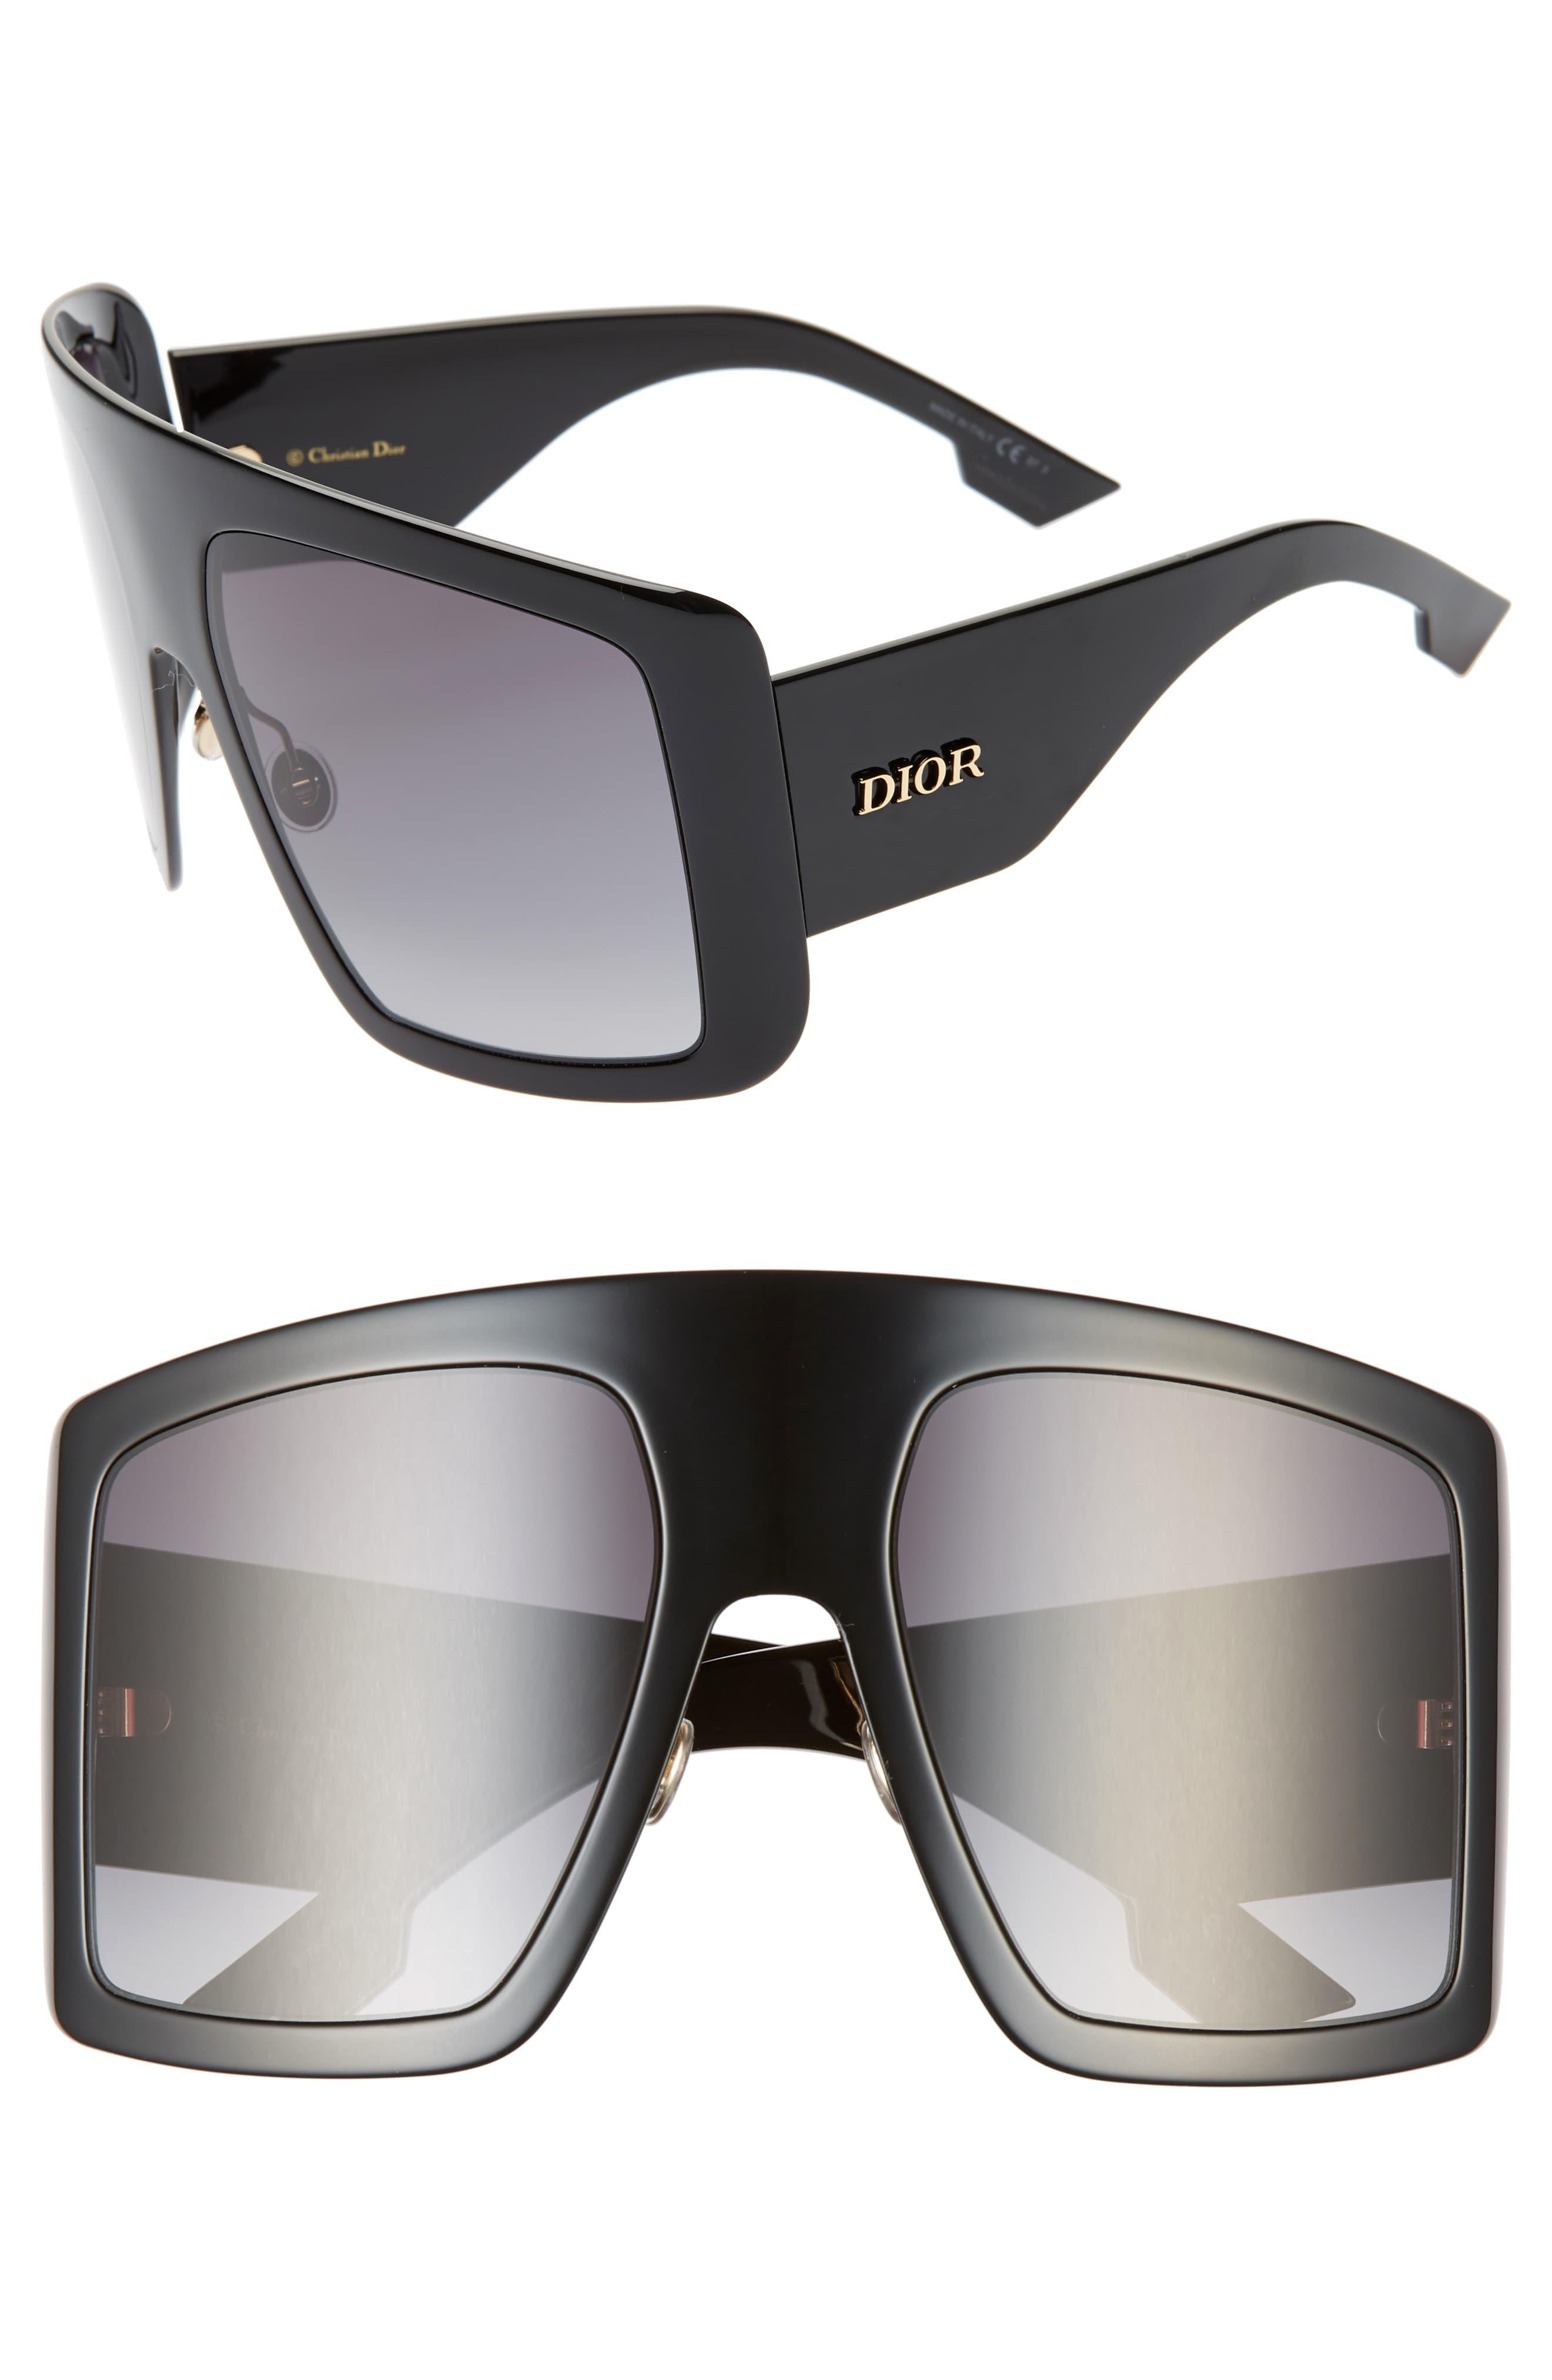 Dior Solight1s 60mm Shield Sunglasses in Black/ Black (Black) - Lyst